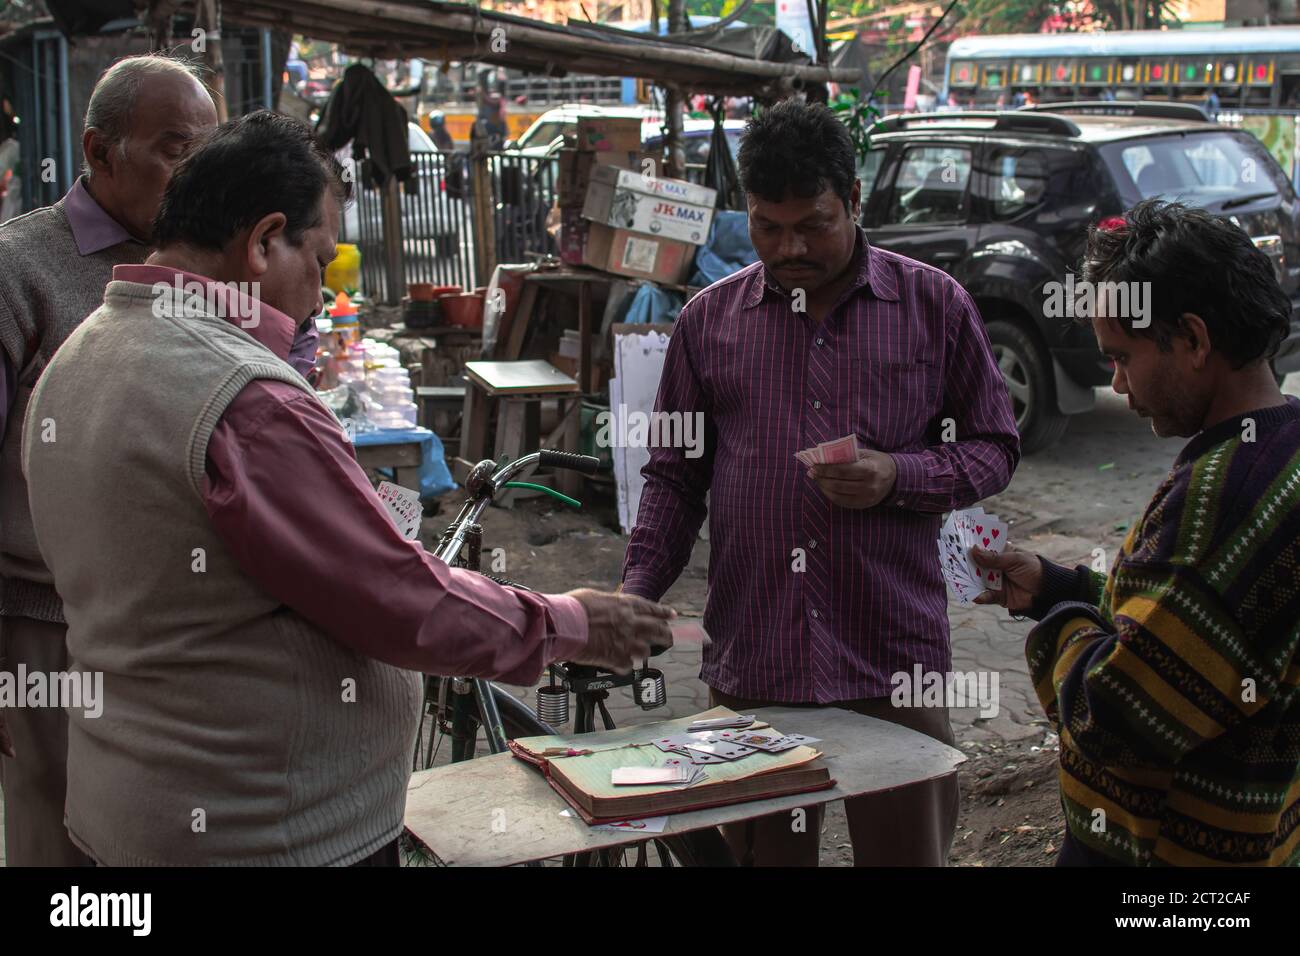 Kolkata, Inde - 1er février 2020 : quatre hommes non identifiés en chemises colorées jouent des cartes dans les rues locales le 1er décembre 2020 à Kolkata, Inde Banque D'Images